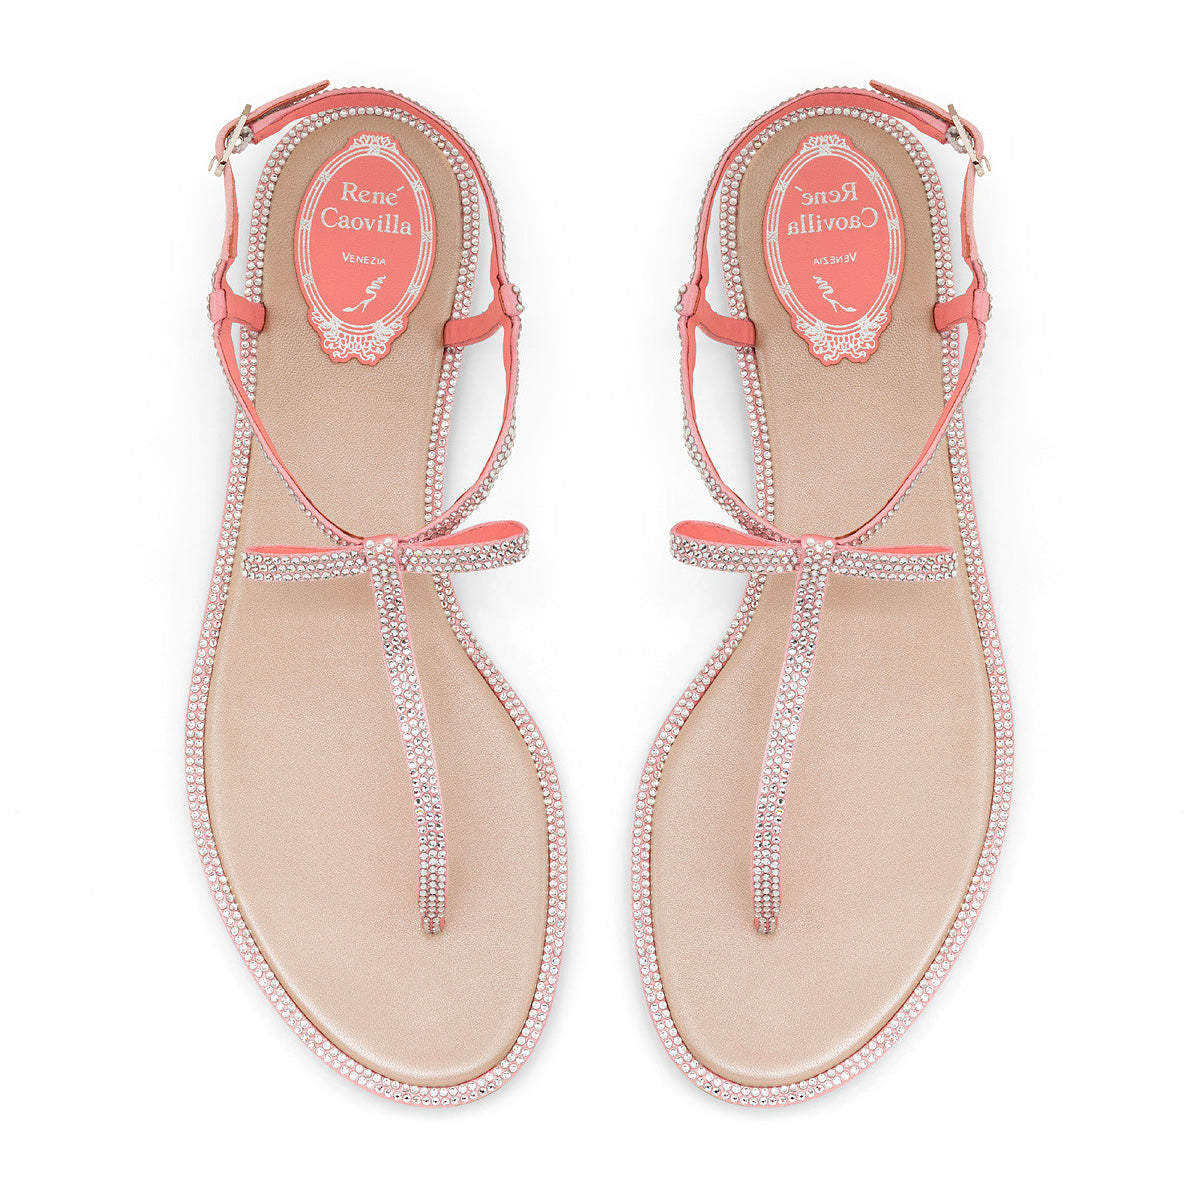 Bonnie Flat Bow Thong Sandals